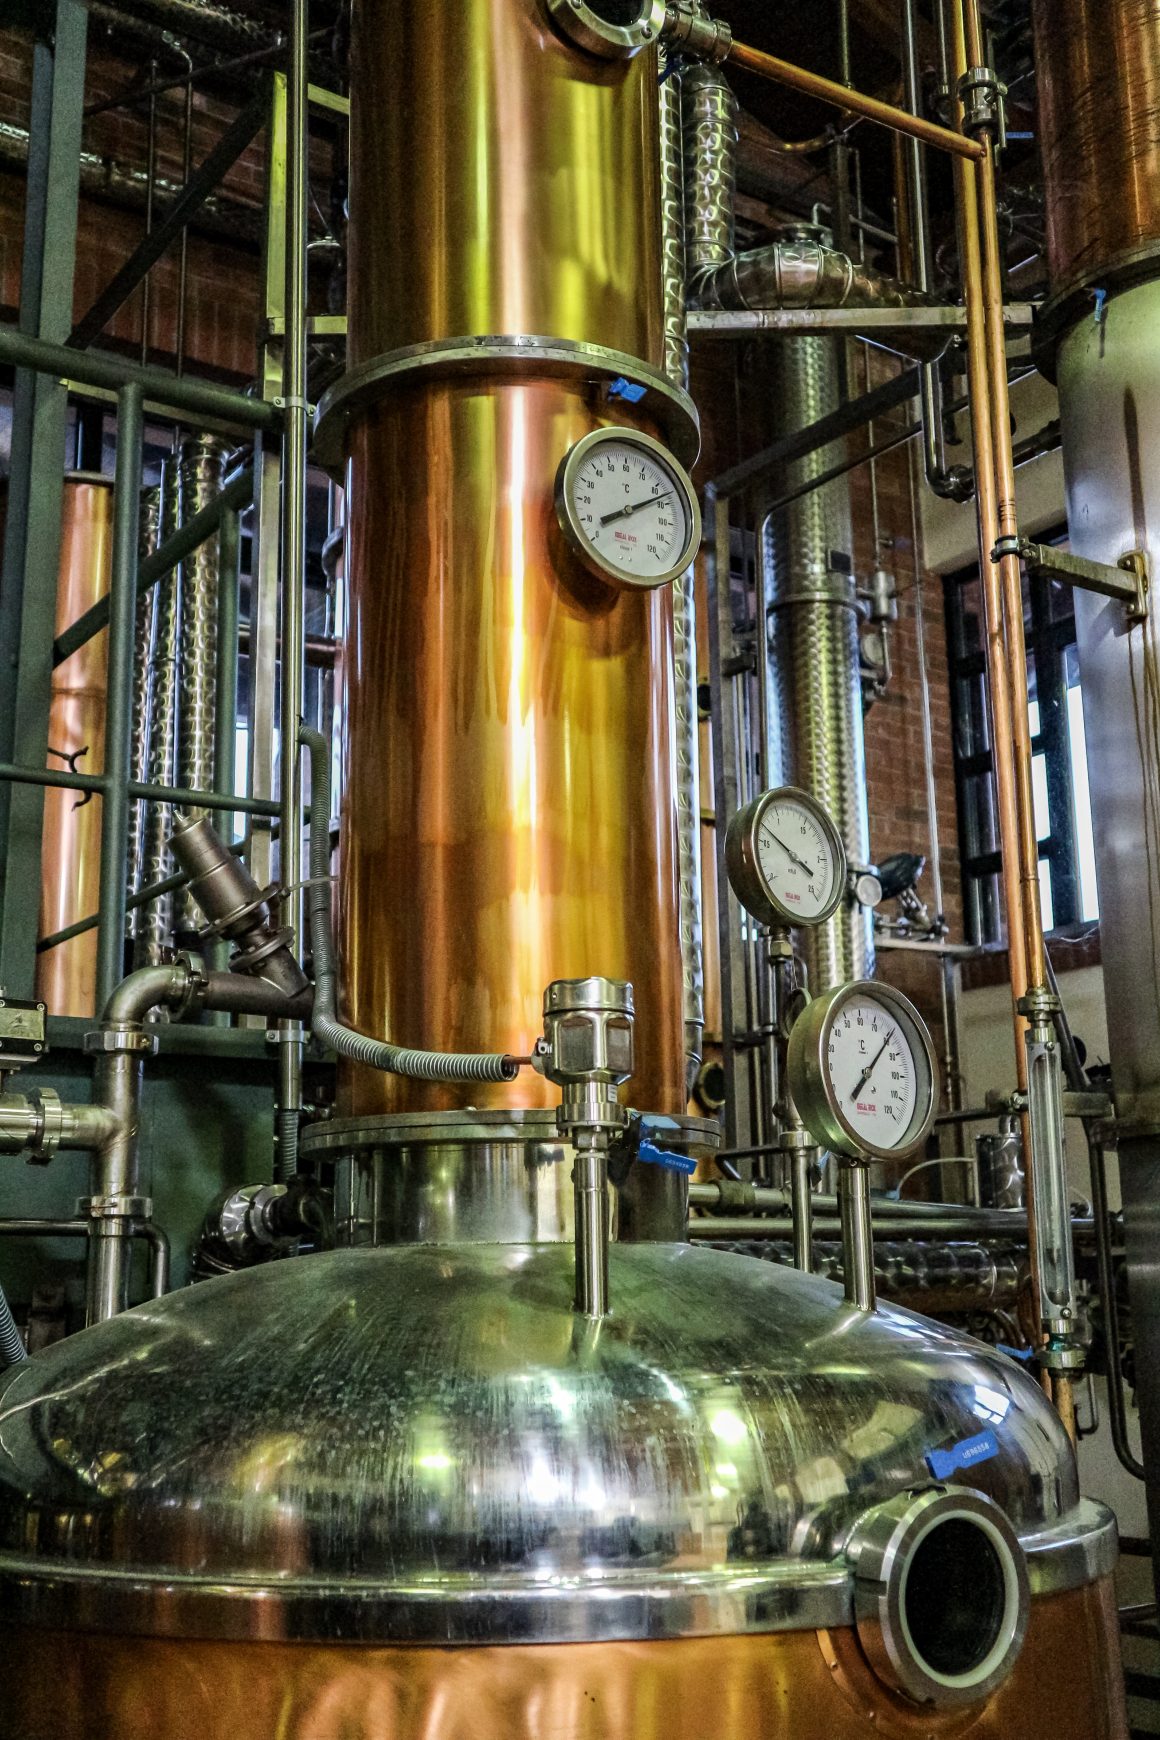 Distillerie Berta